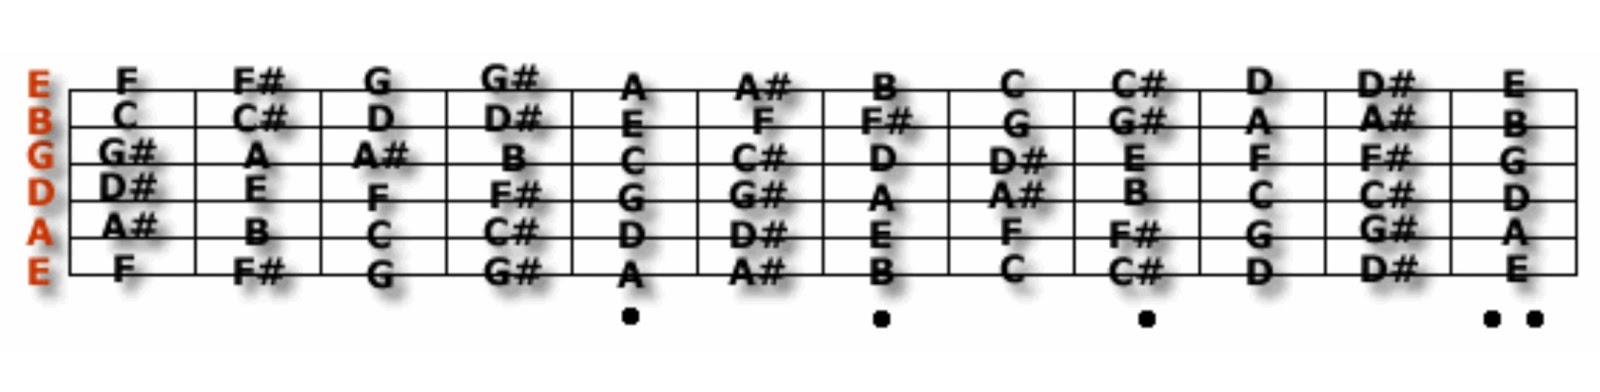 Ноты бас 4. Расположение нот на грифе бас гитары 4 струны. Ноты на бас гитаре 4 струны. Ноты на грифе бас гитары 6 струн. Расположение нот на грифе бас гитары.